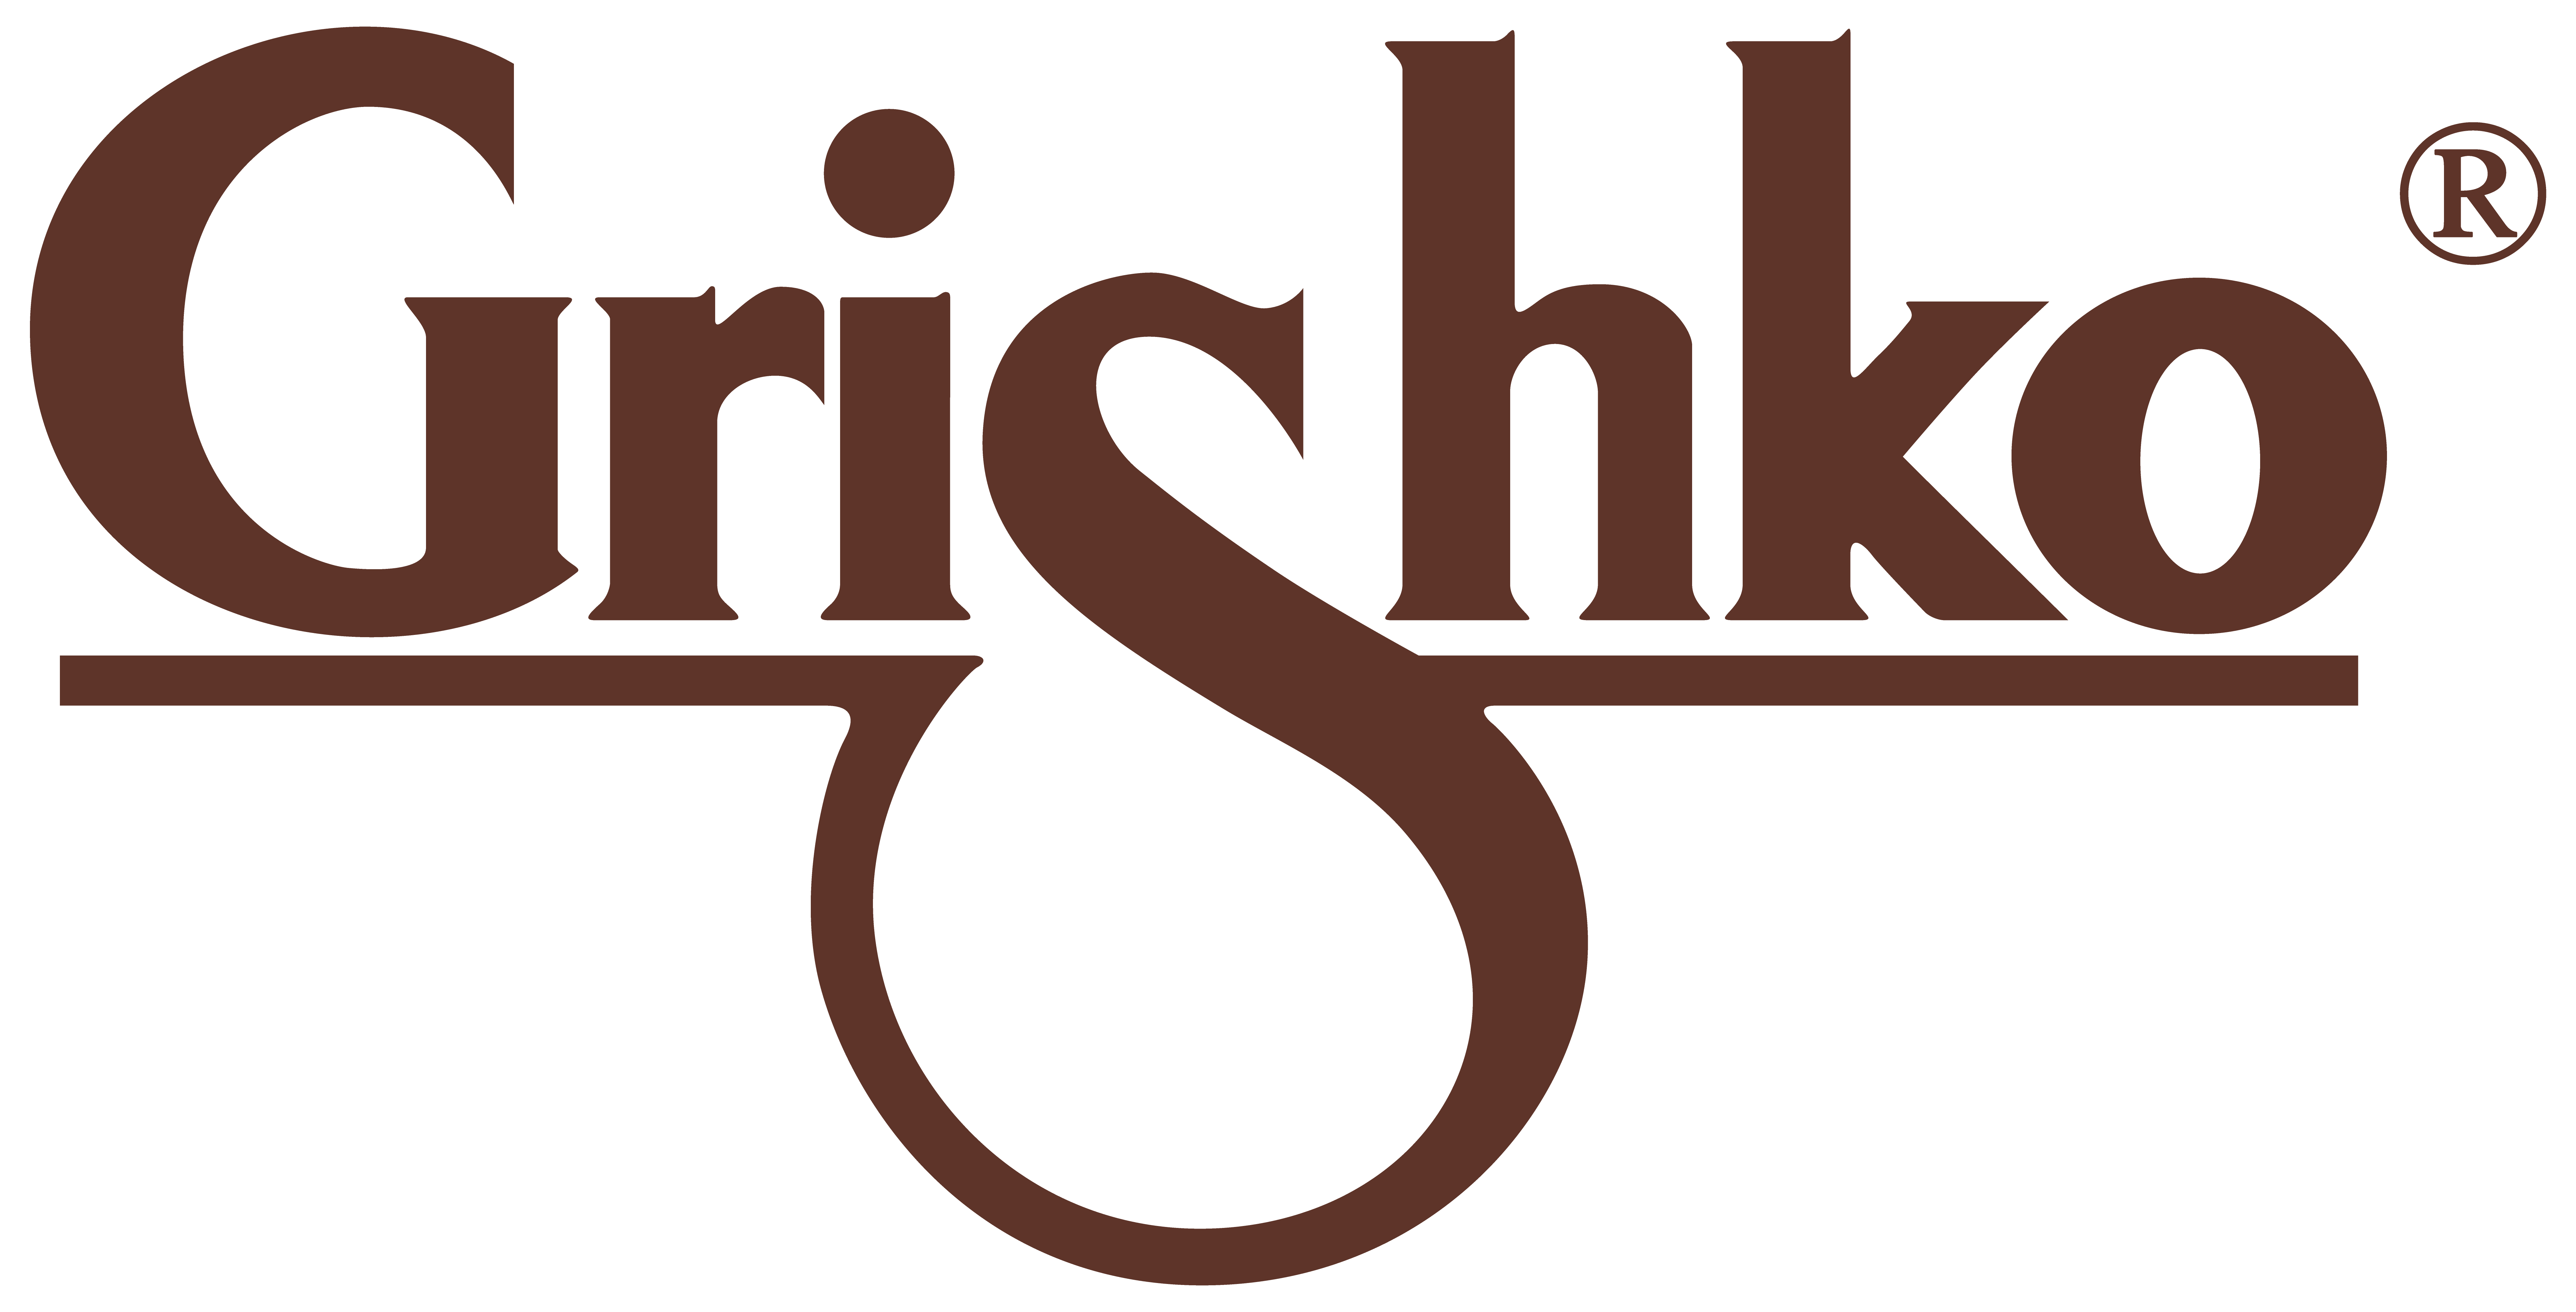 Grishko Logo